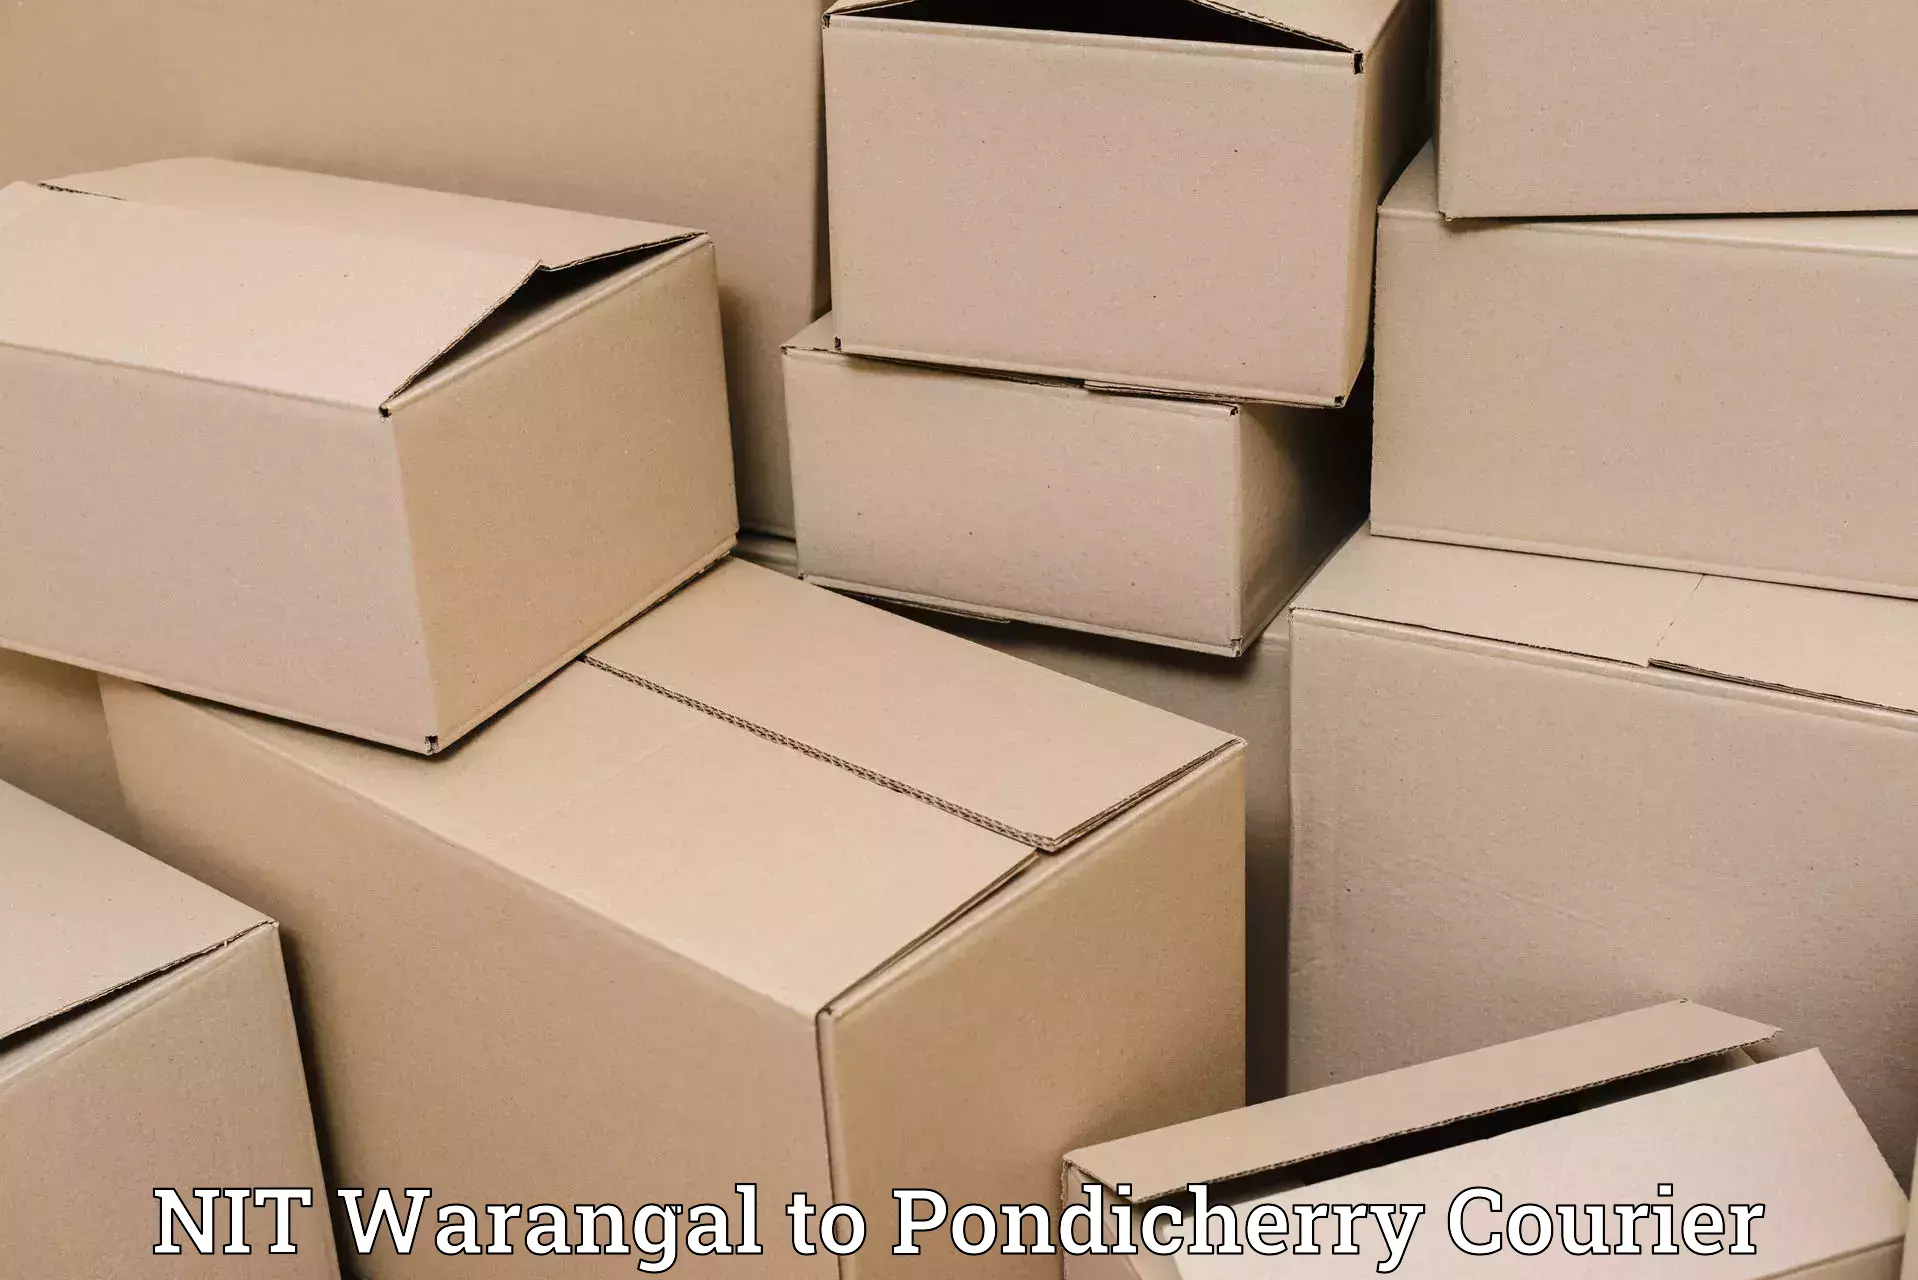 Enhanced shipping experience in NIT Warangal to Karaikal